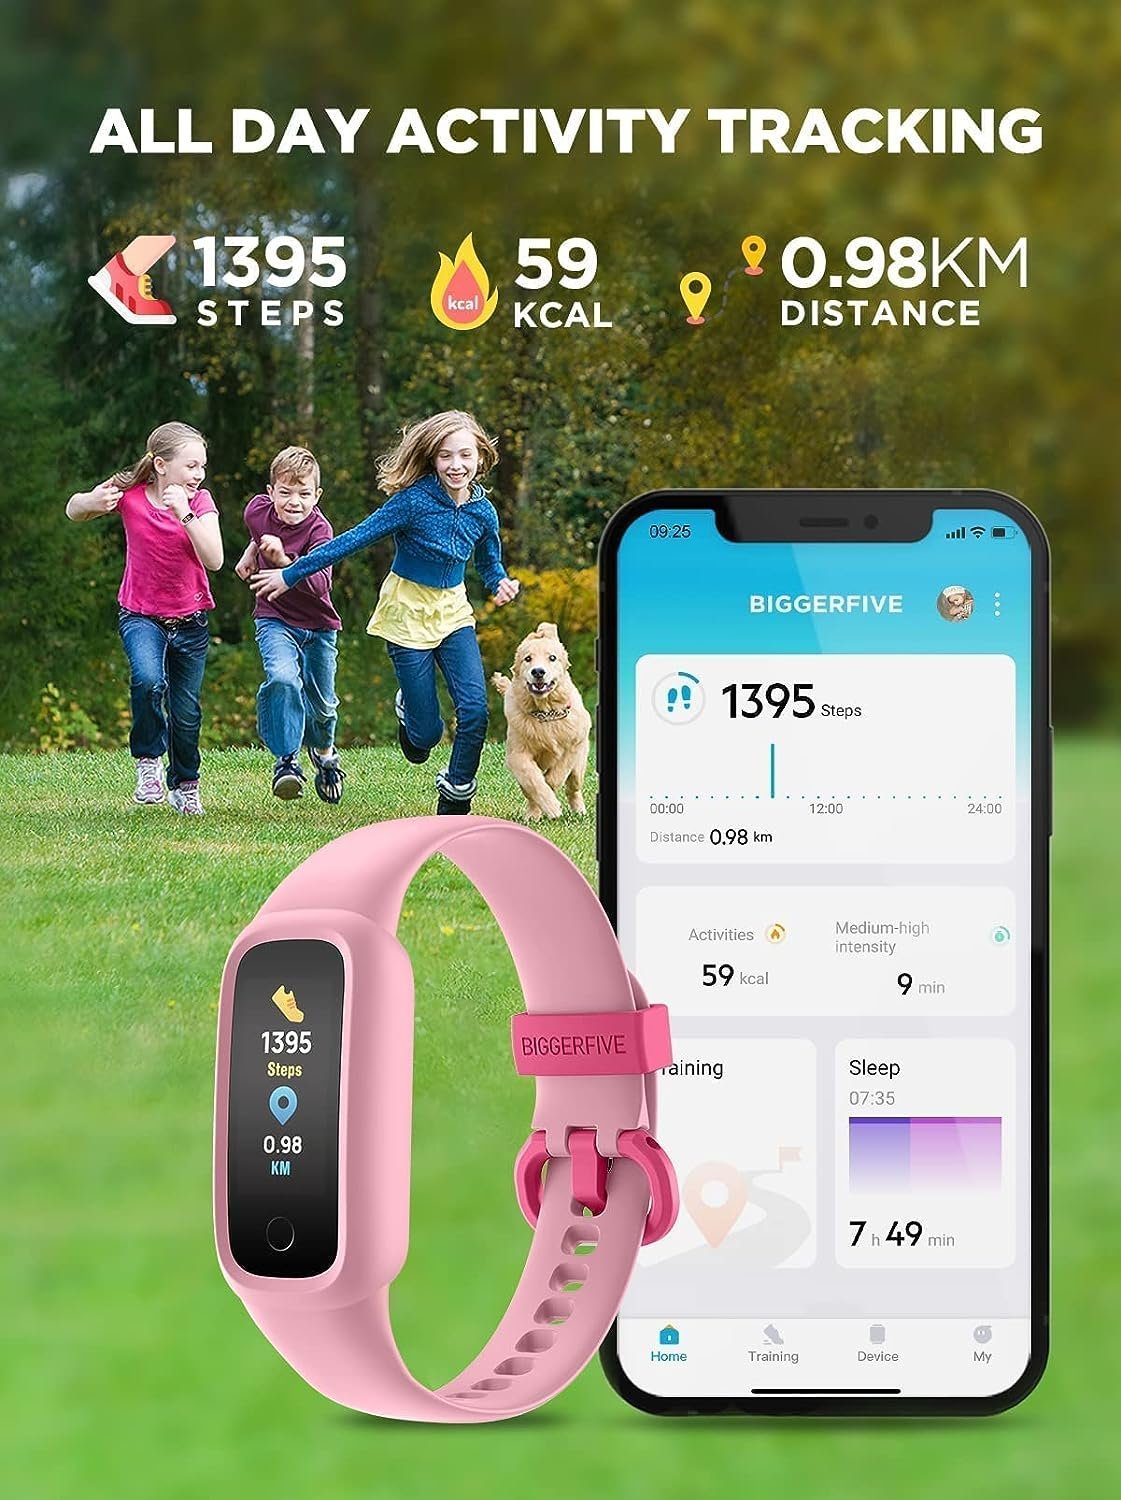 Fitnessband Aktivitätstracker IP68 BIGGERFIVE (Android Kinder Uhr Tracker Fitness Pulsuhr iOS), Wasserdicht